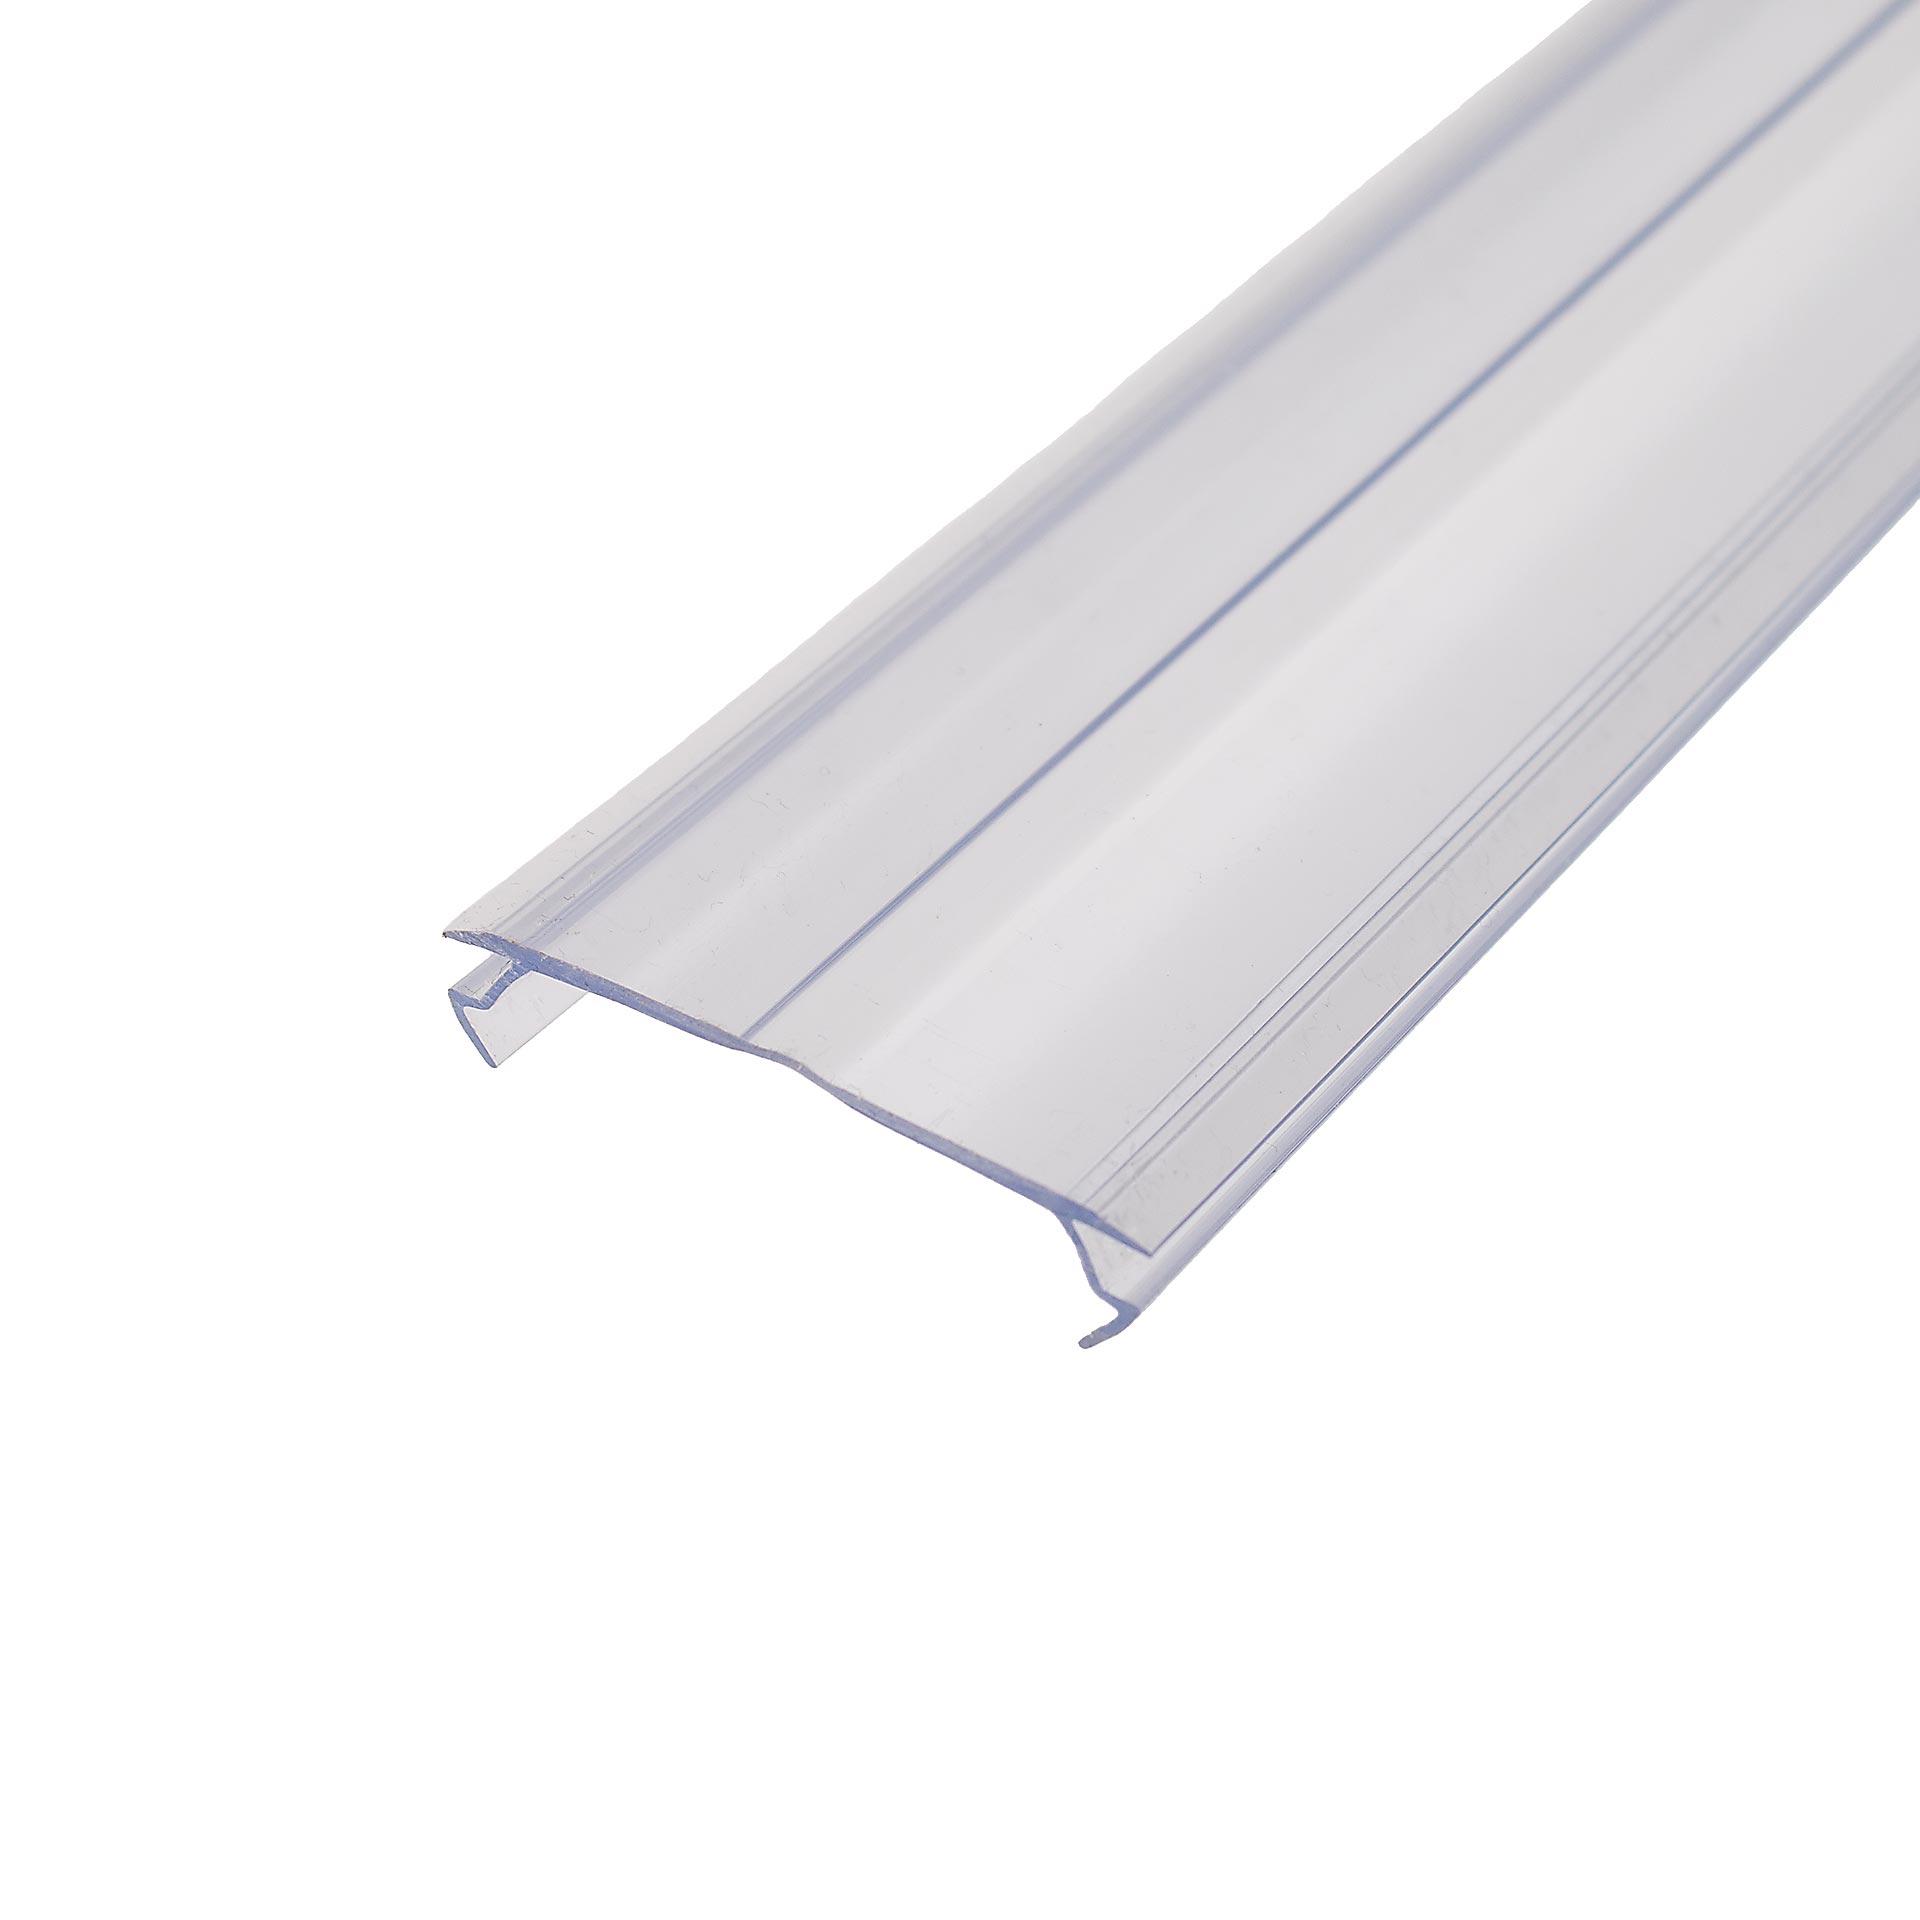 Profil obturateur, PVC transparent, 2 mètres de long